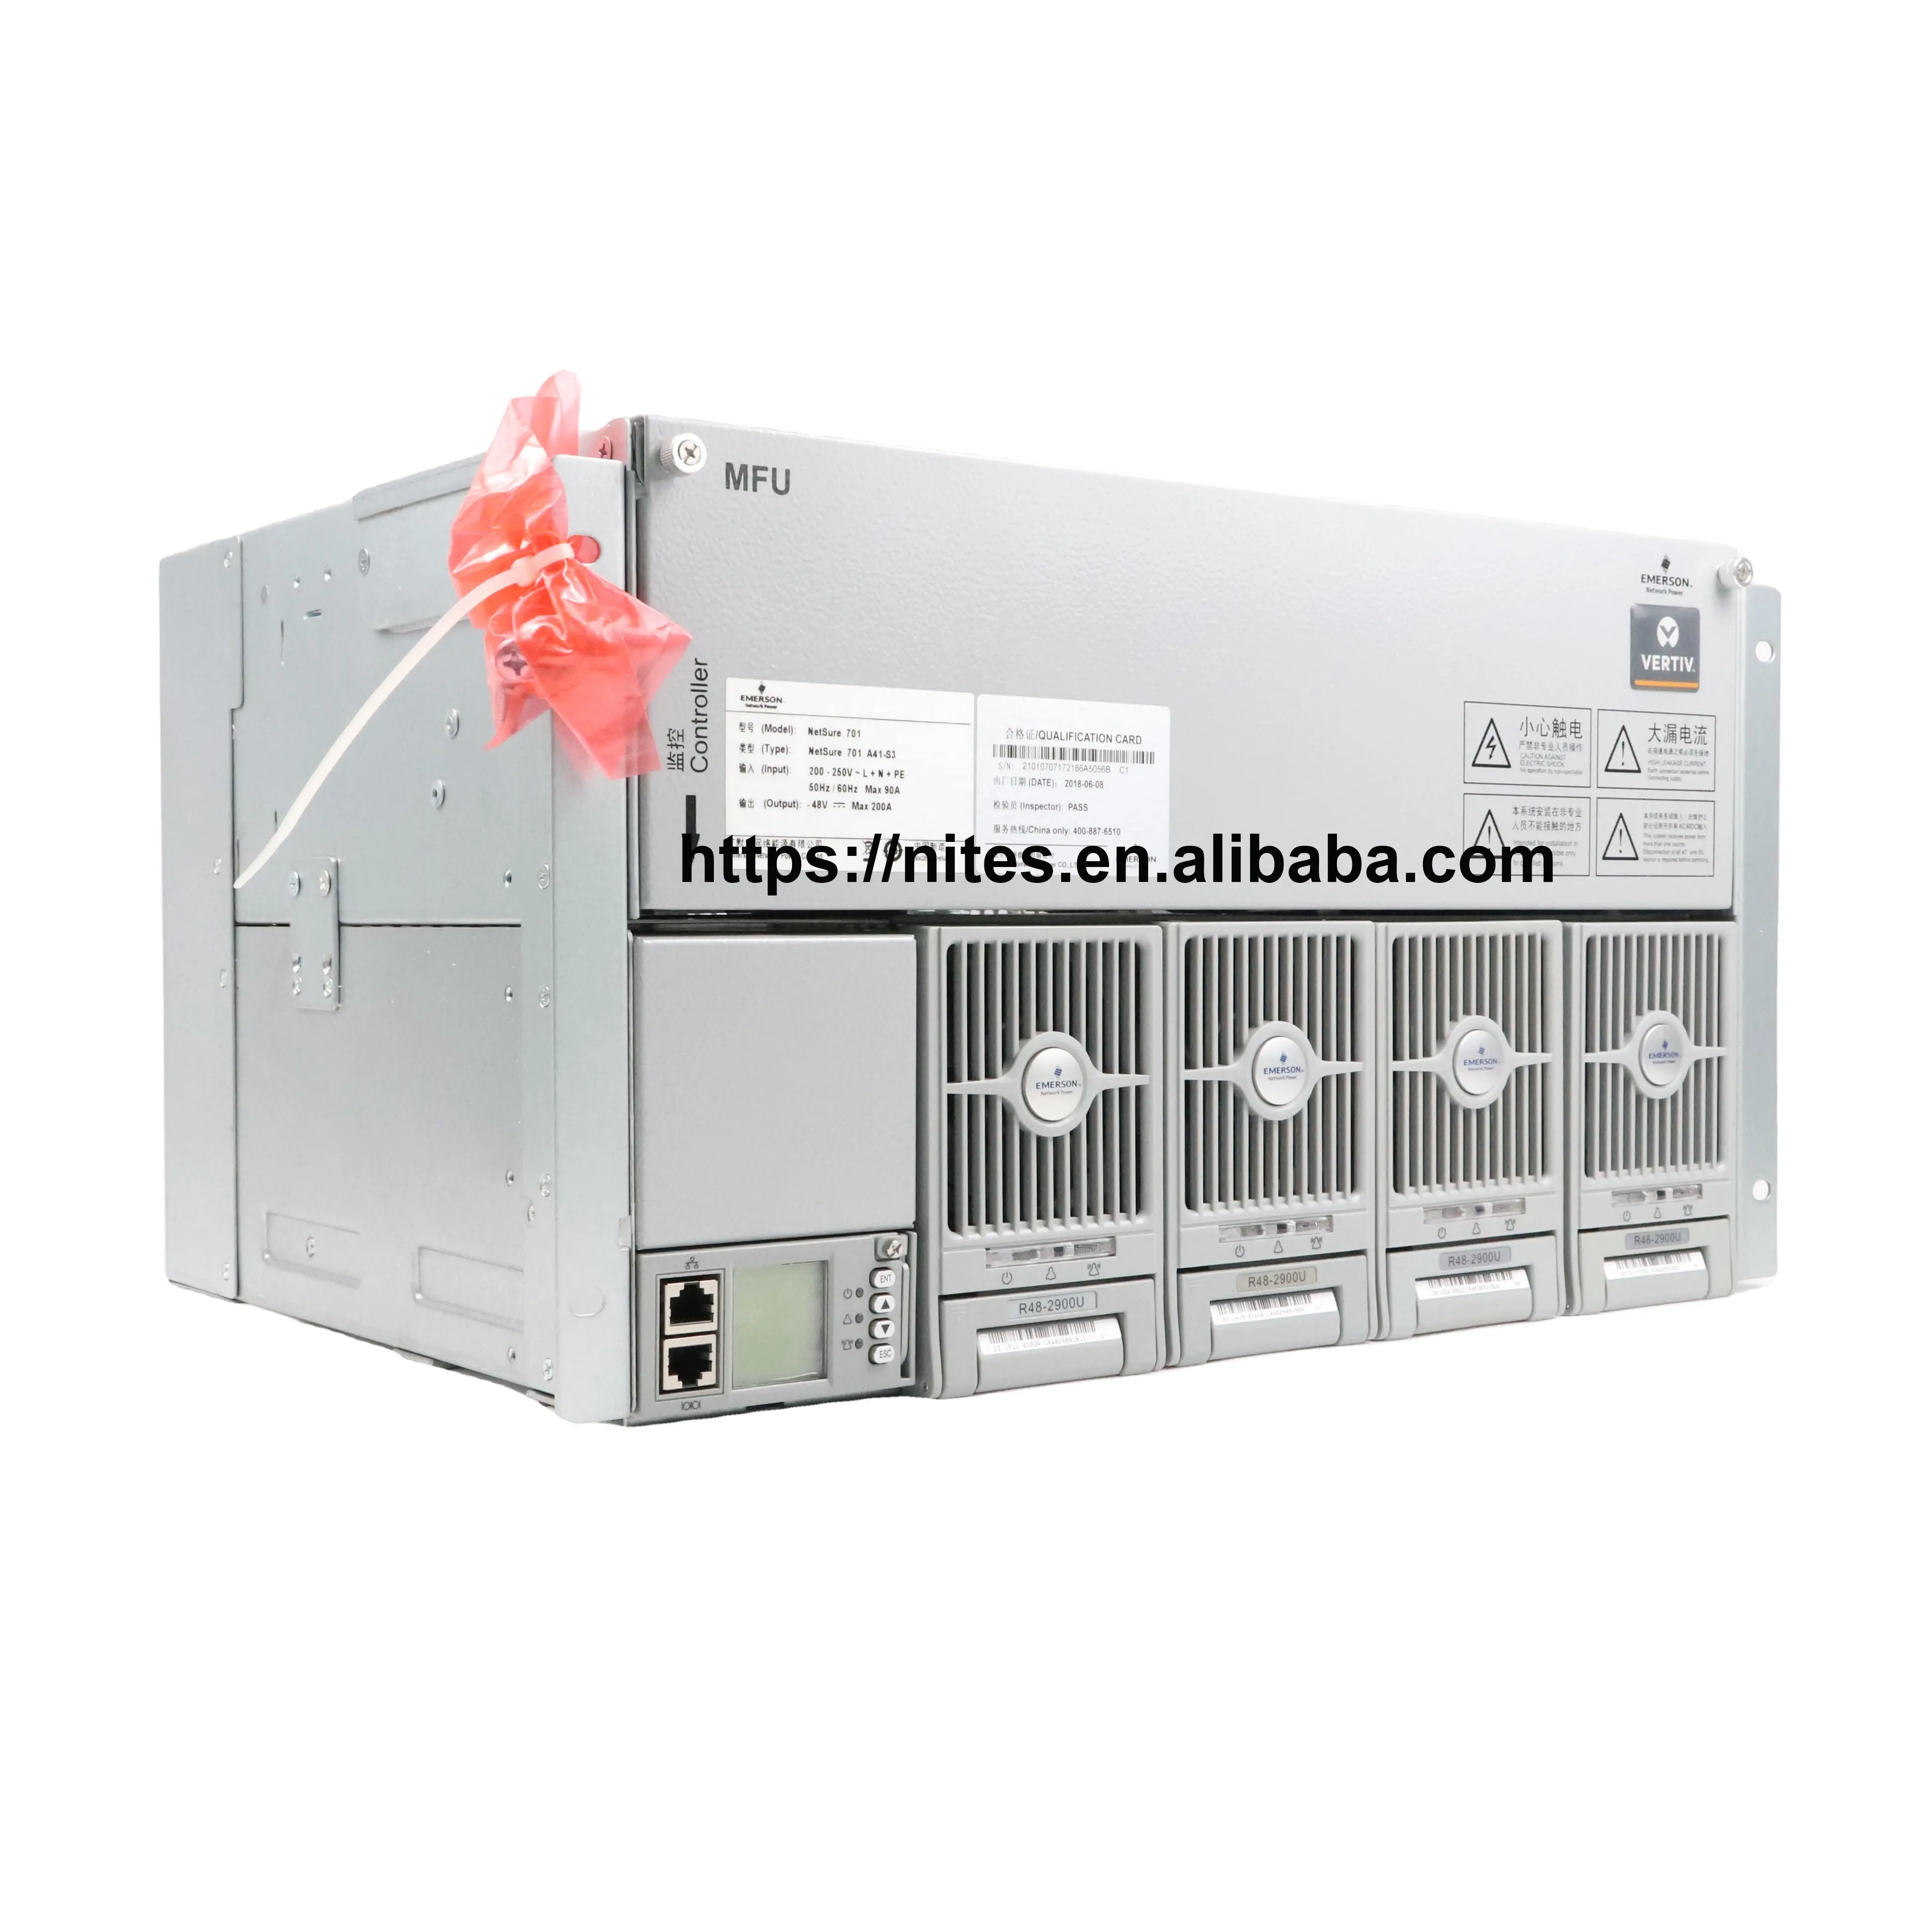 NEW % NetSure 701A41-S3 701A41電源システムネットワーク電源フレームシステムテレコム整流器システムR48-2900U